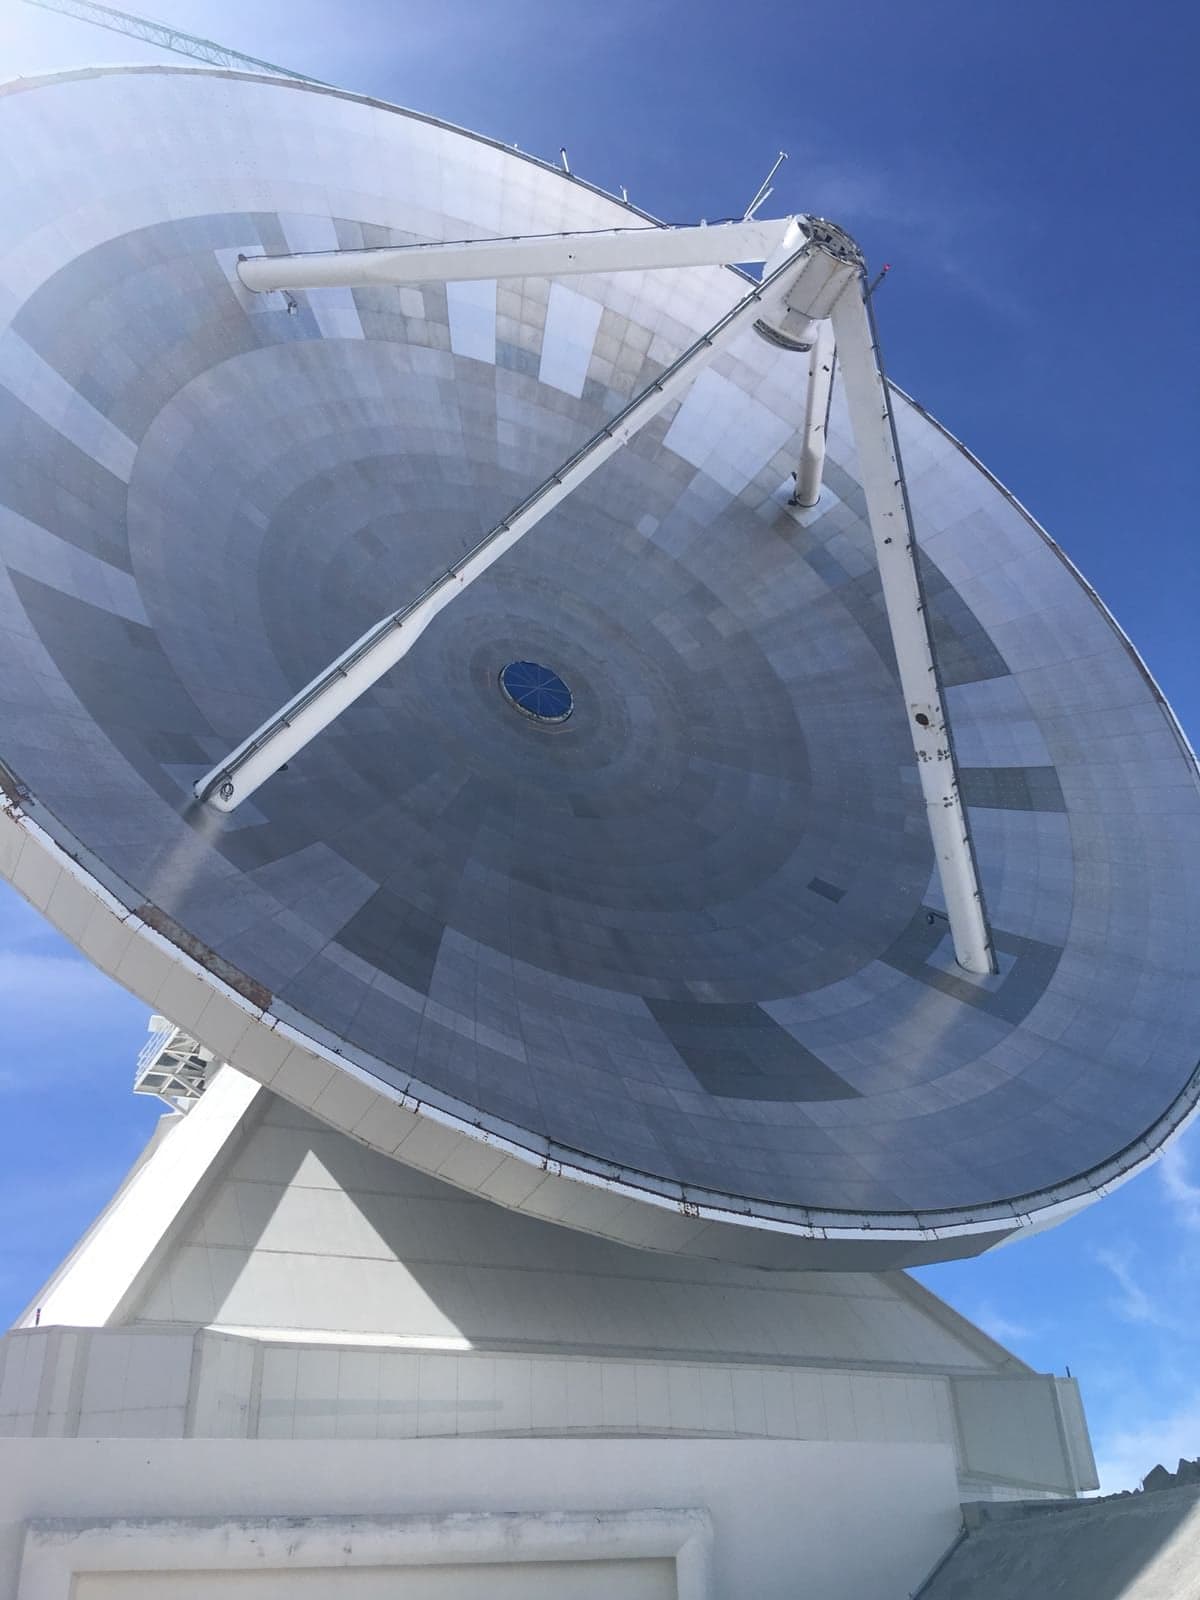 The Large Millimetre Telescope (LMT) dish